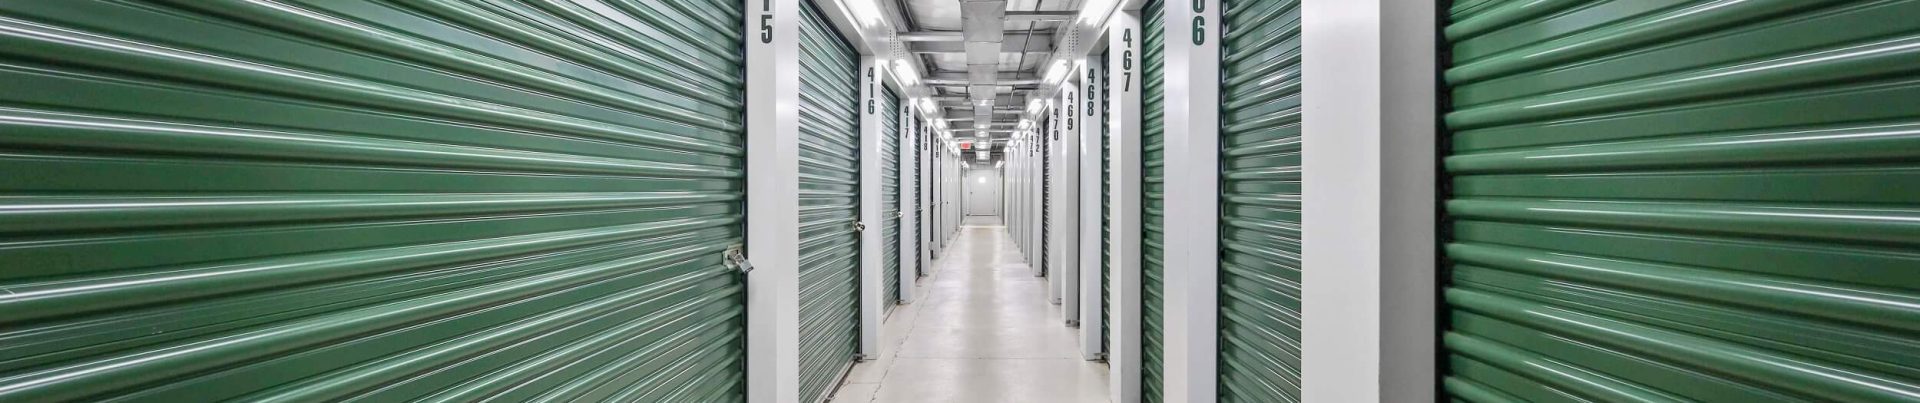 indoor storage units at Storage Sense in Noblesville IN